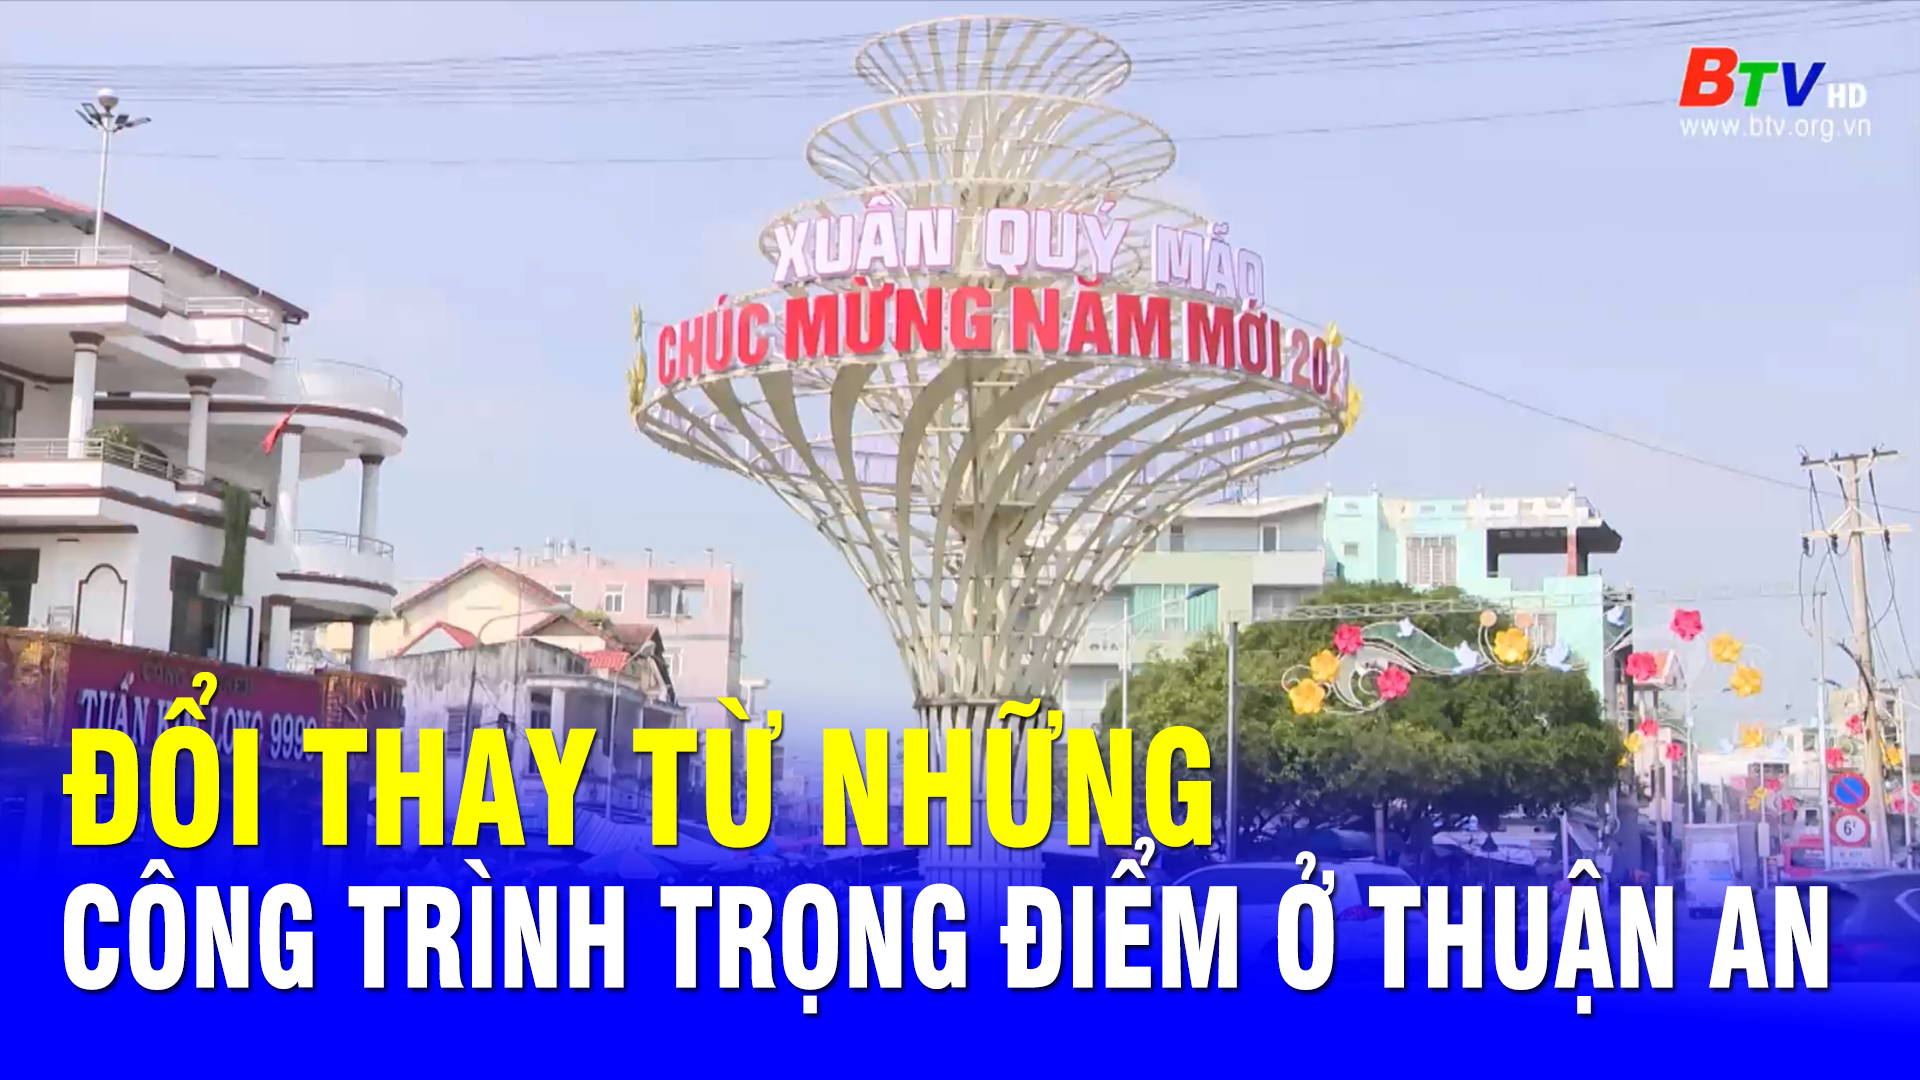 Đổi thay từ những công trình trọng điểm ở Thuận An